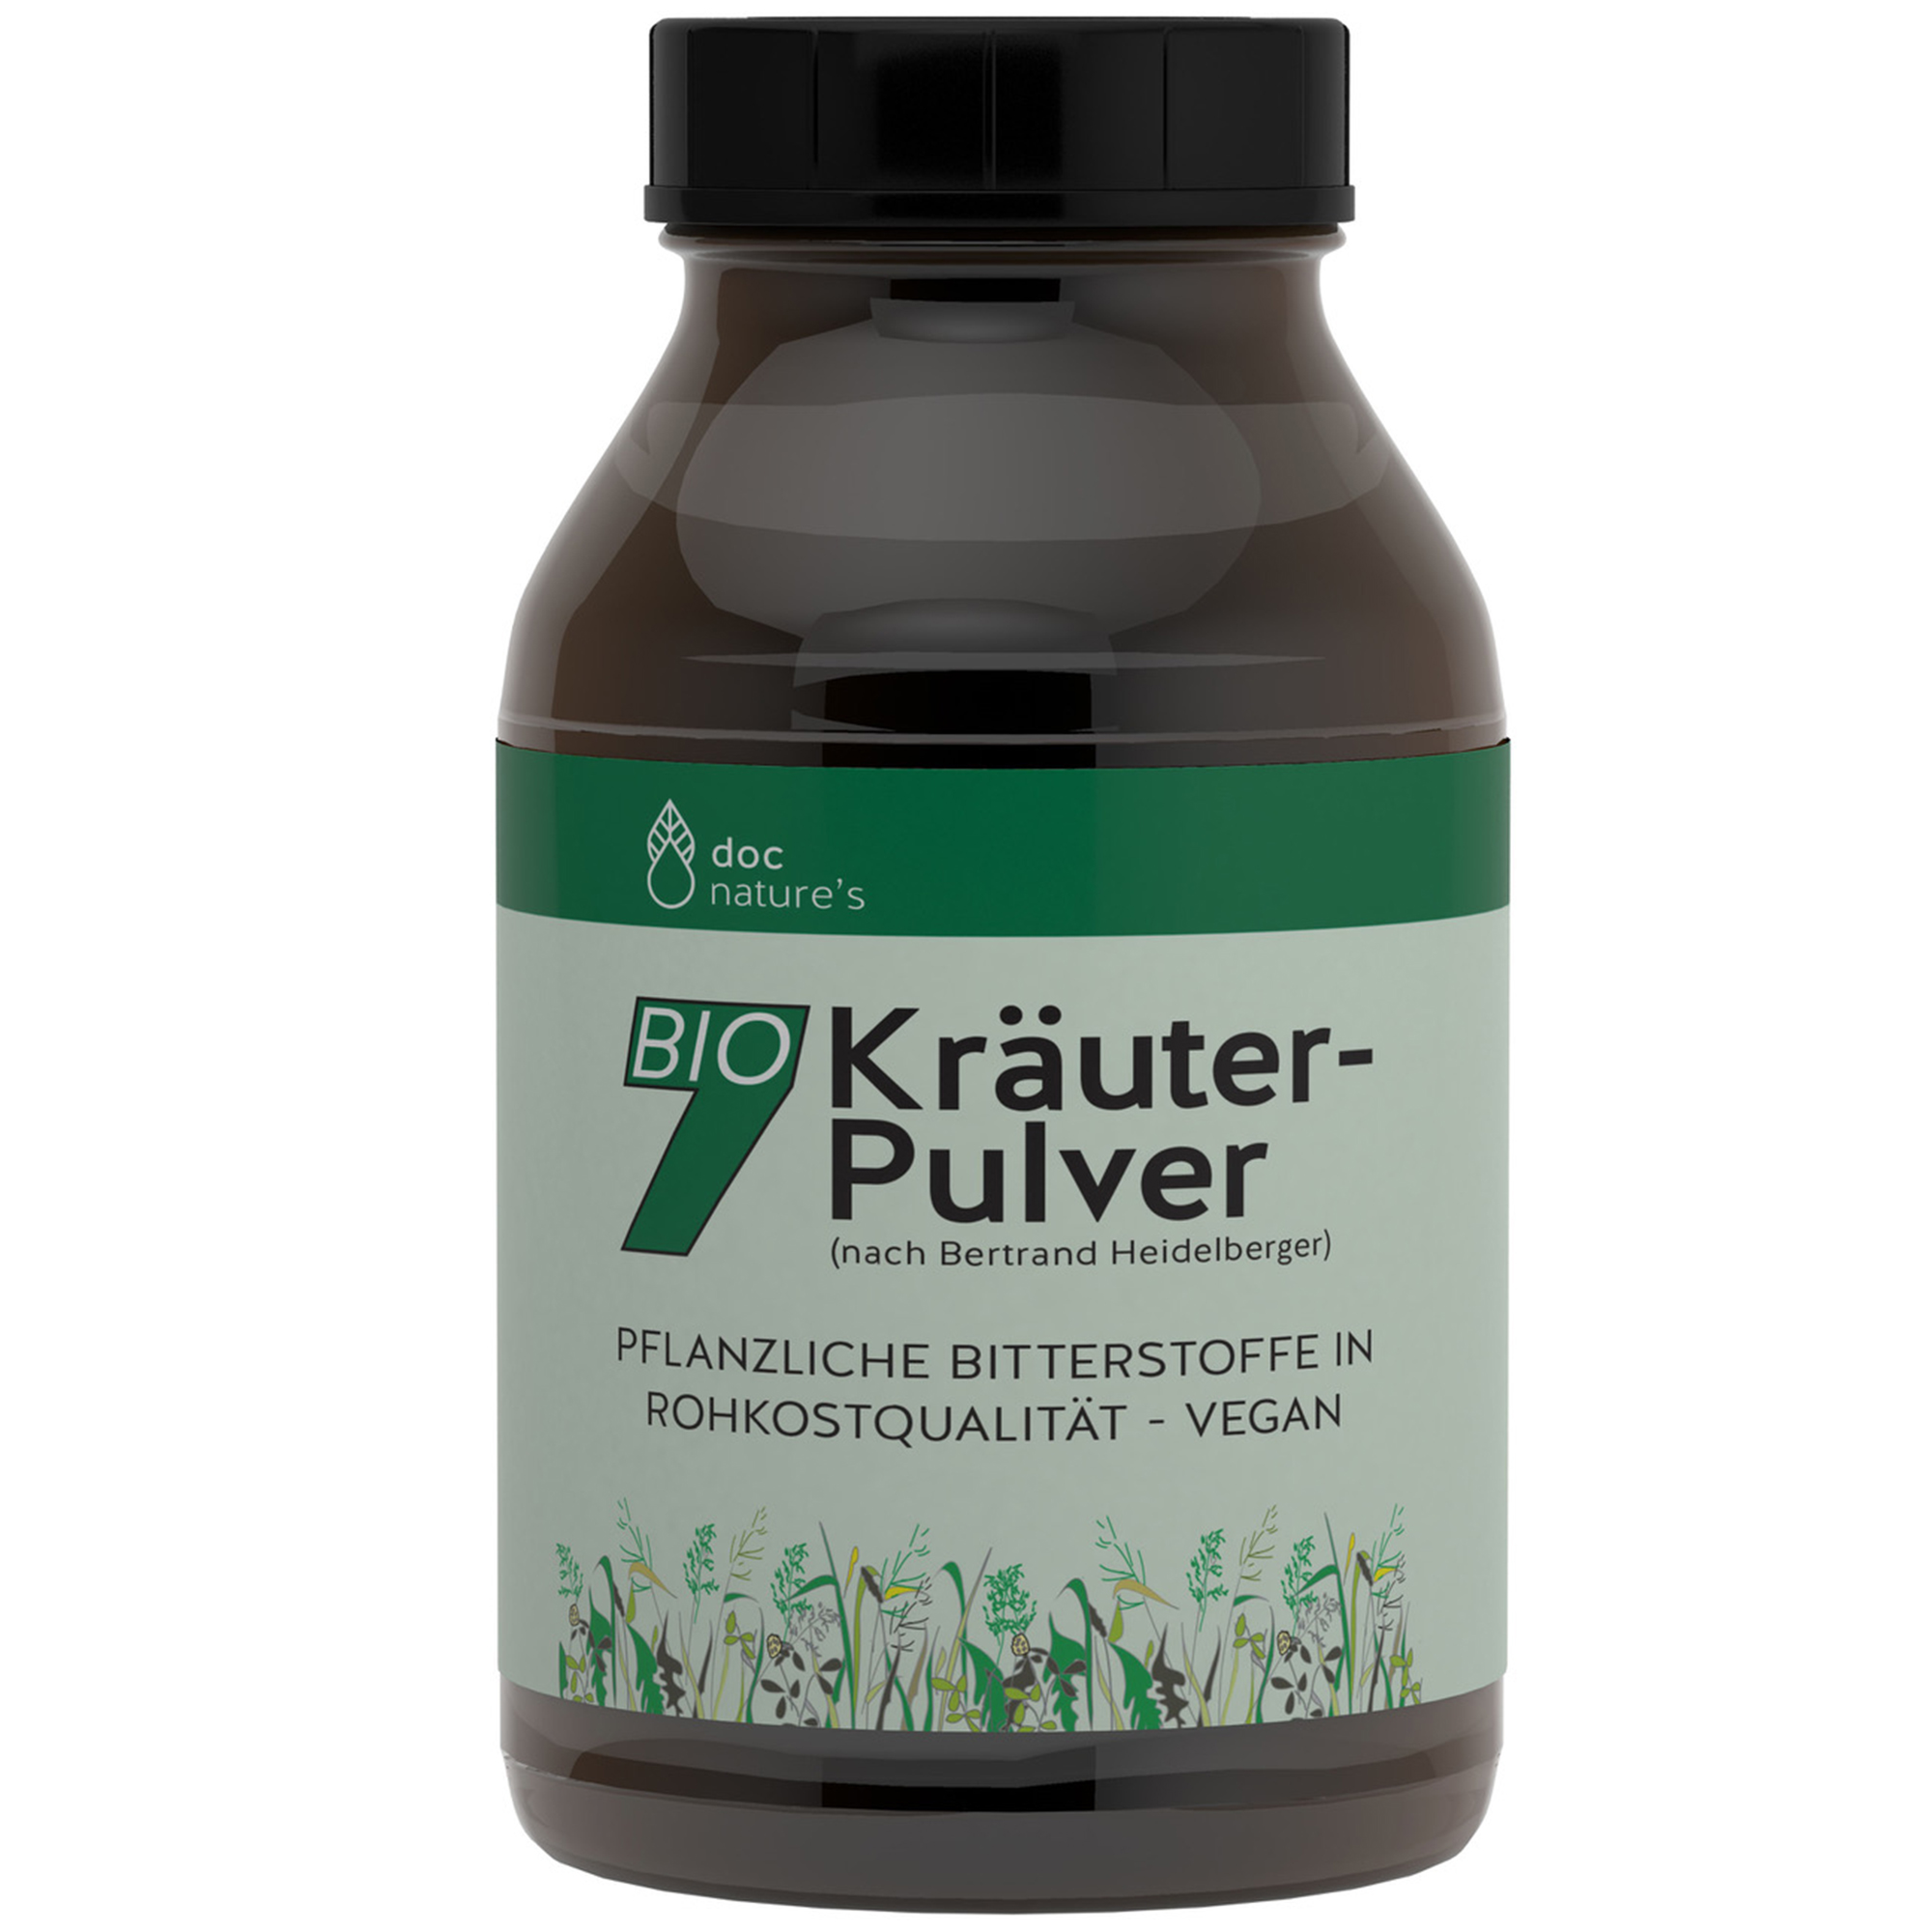 doc nature’s BIO 7 Kräuter-Pulver, Glas